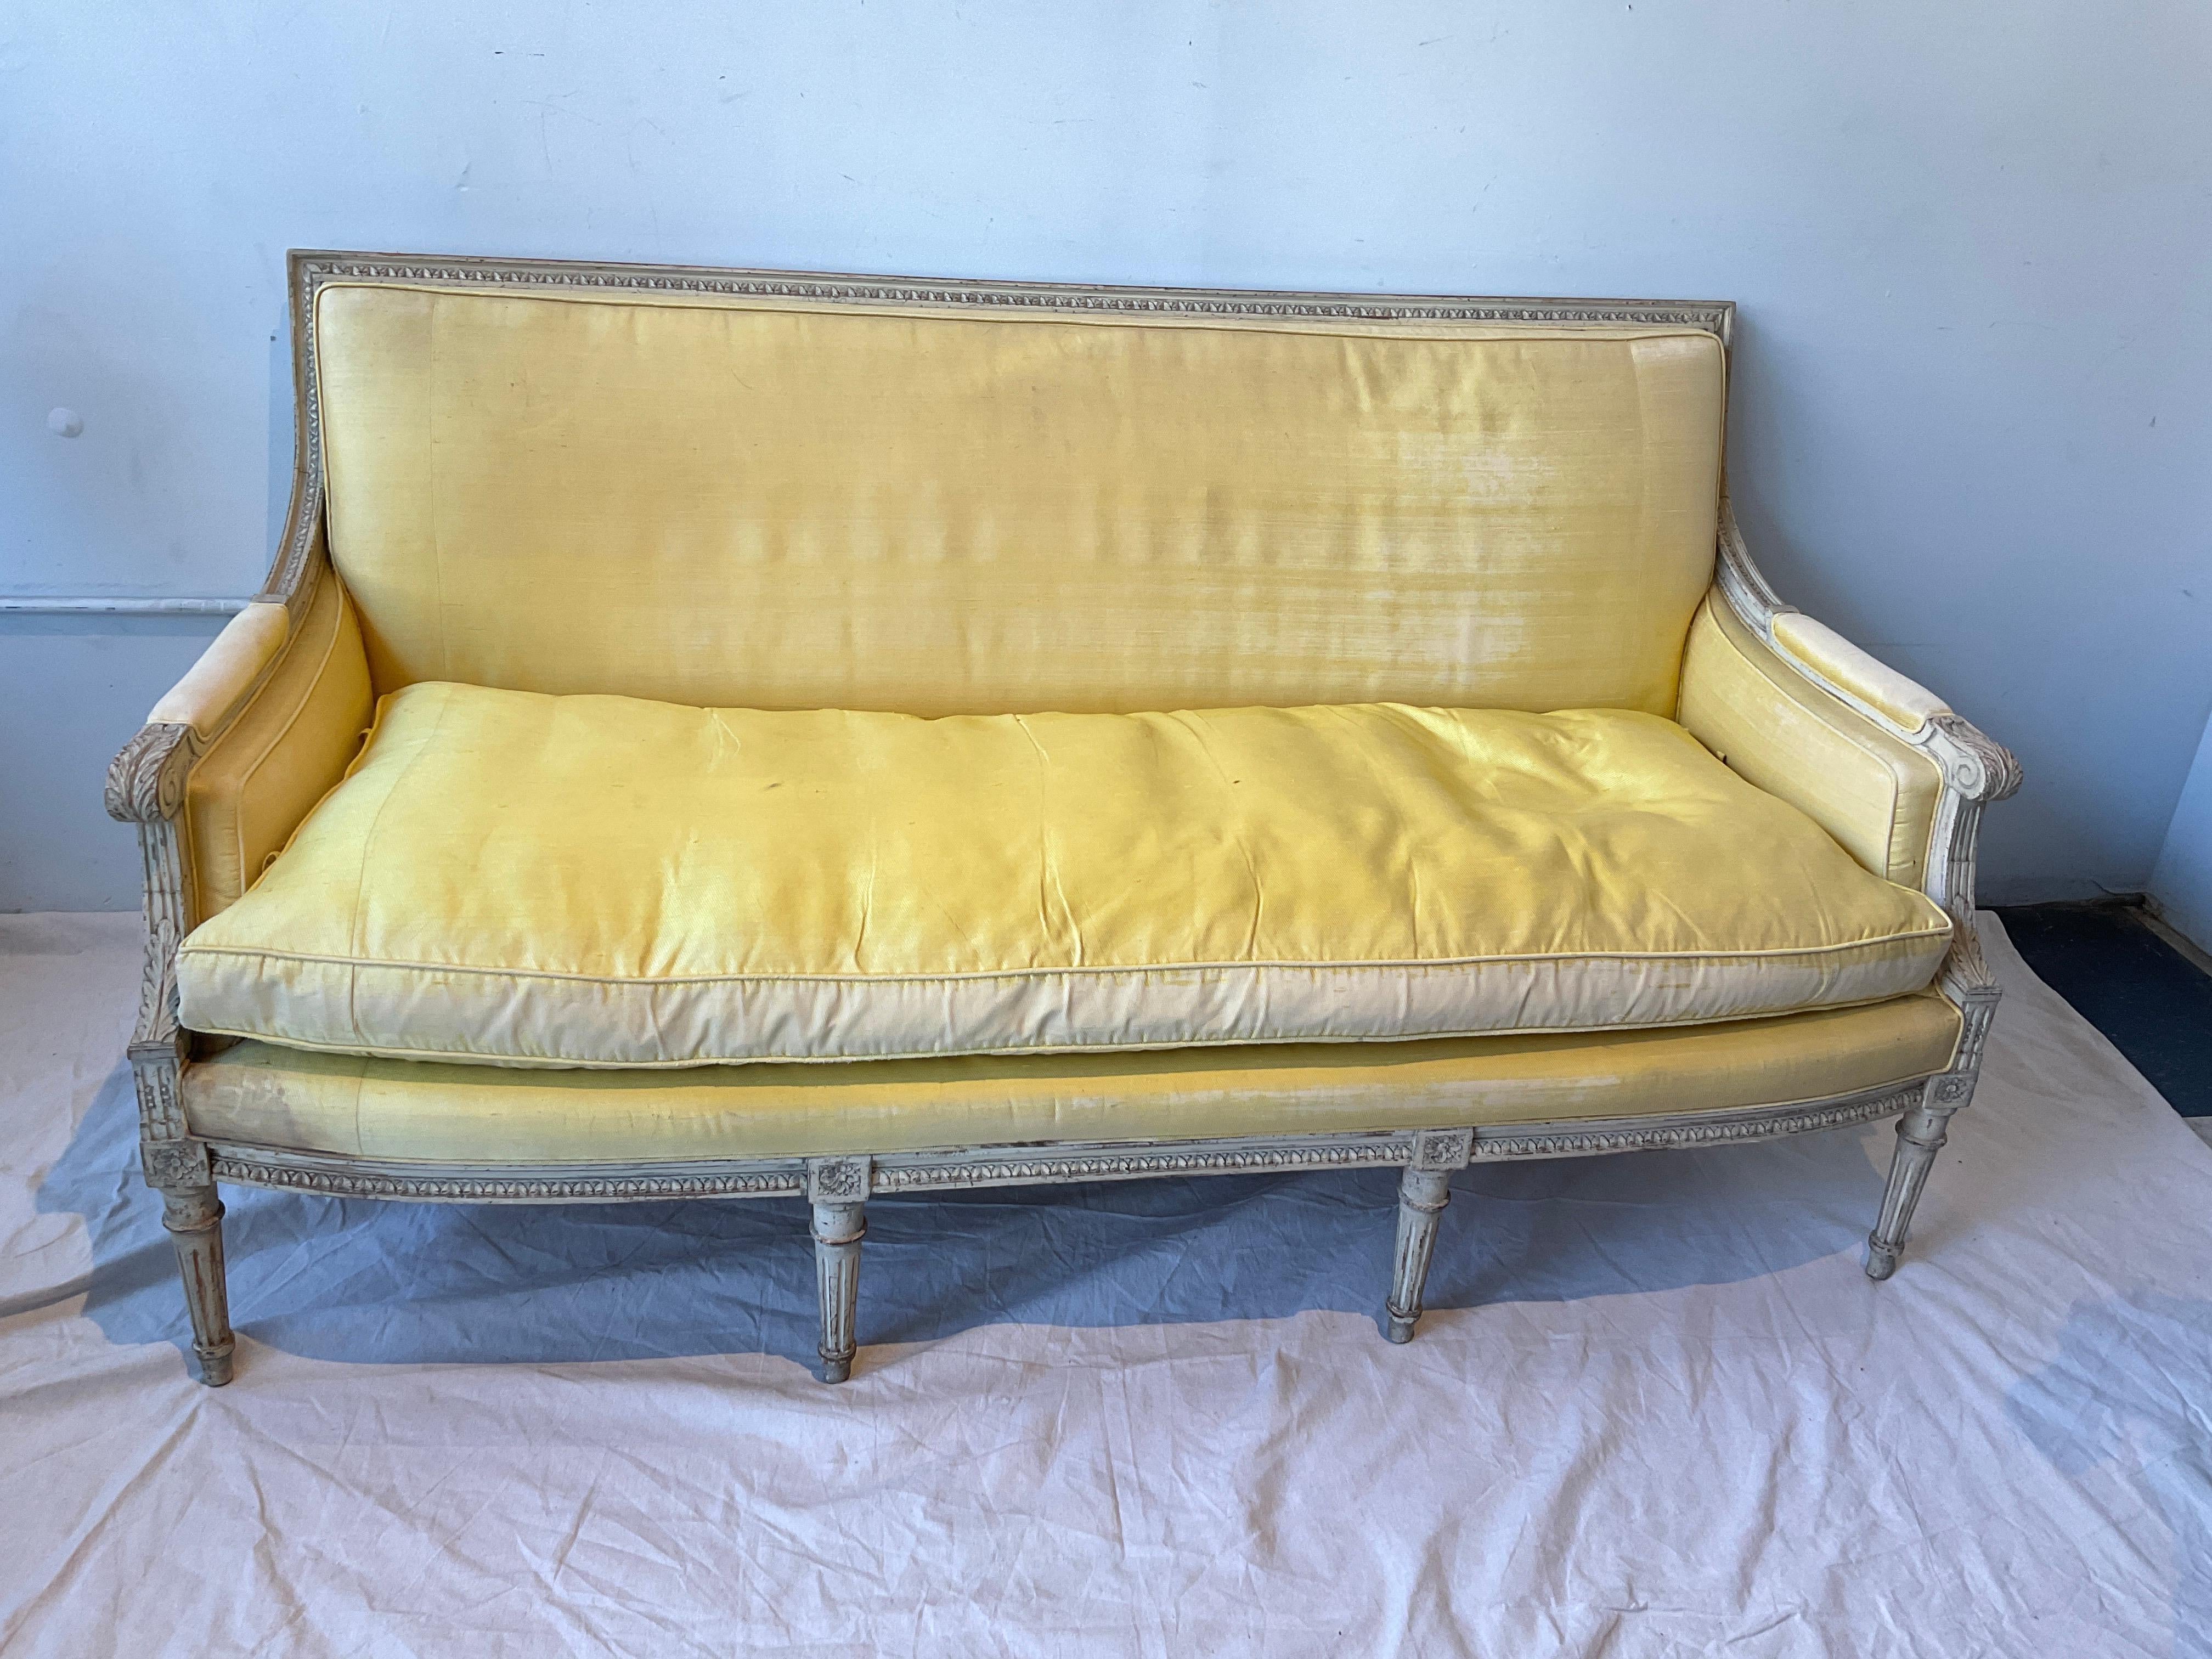 Französische Couch aus geschnitztem Louis XVI-Holz aus den 1880er Jahren, lackiert. Von Yale R. Barge Antiquitätengeschäft von New York City.
Daunenkissen,  Muss neu gepolstert werden.